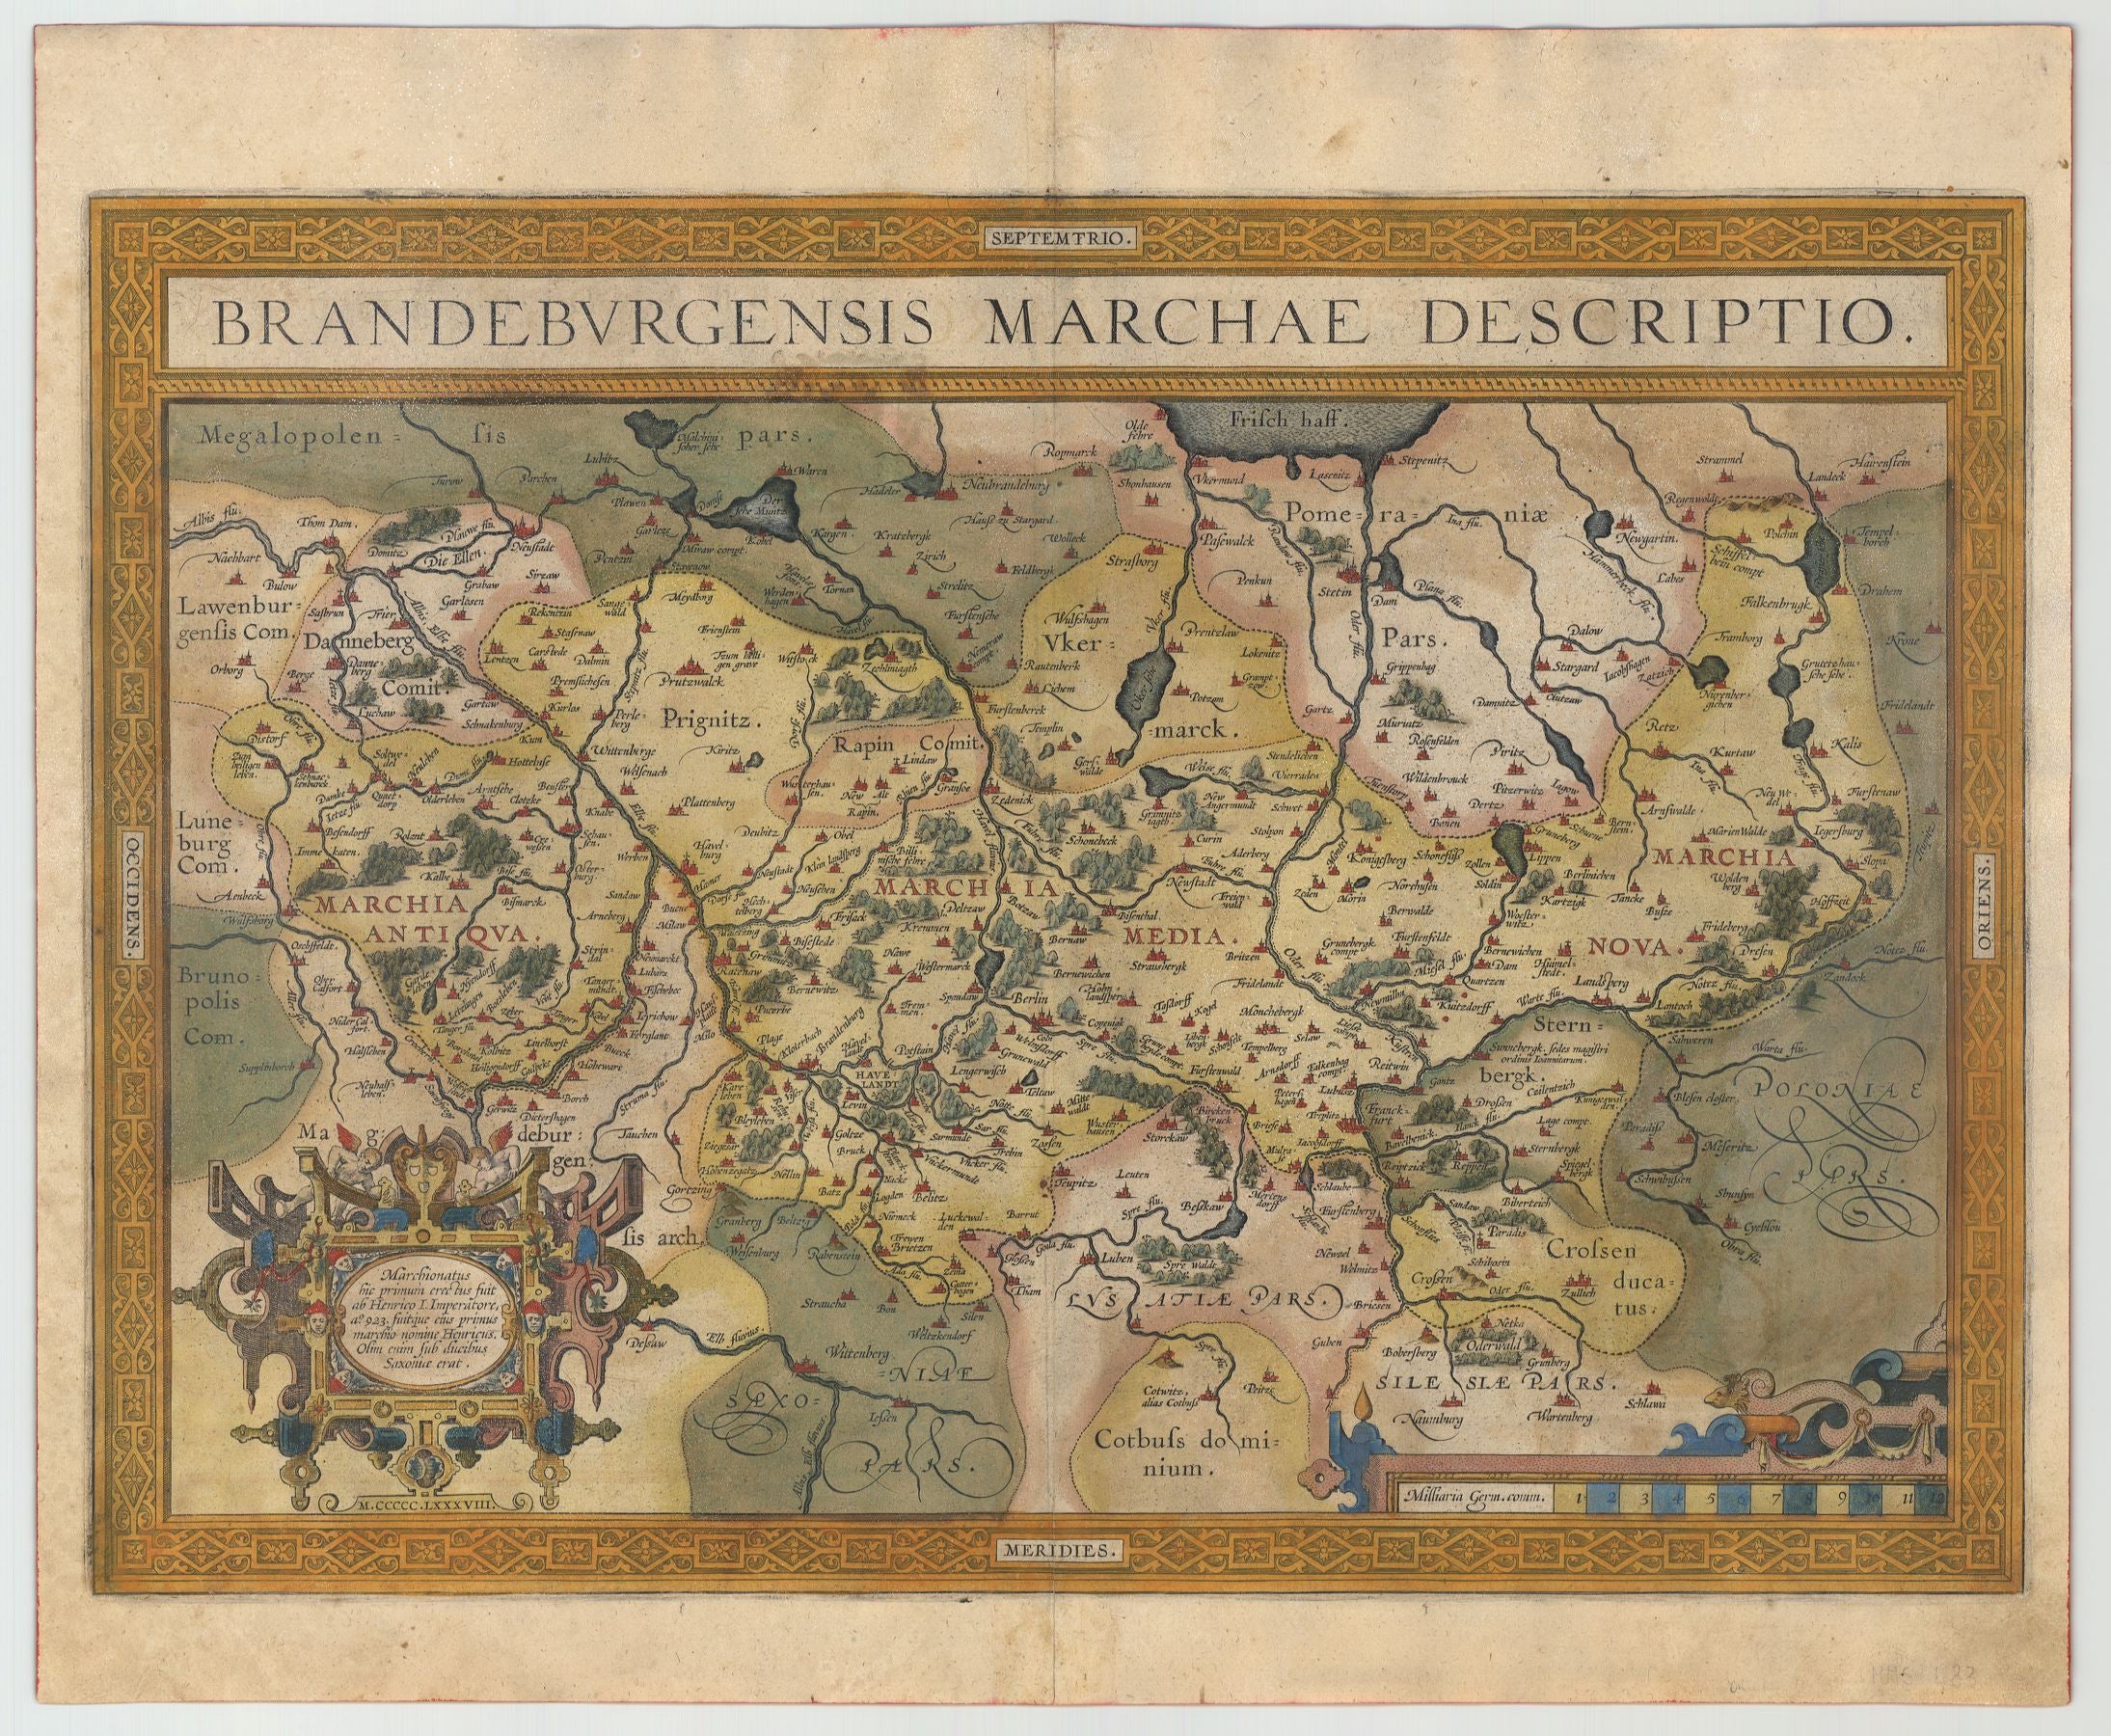 R3464  Ortelius, Abraham: Brandeburgensis Marchae Descriptio 1588